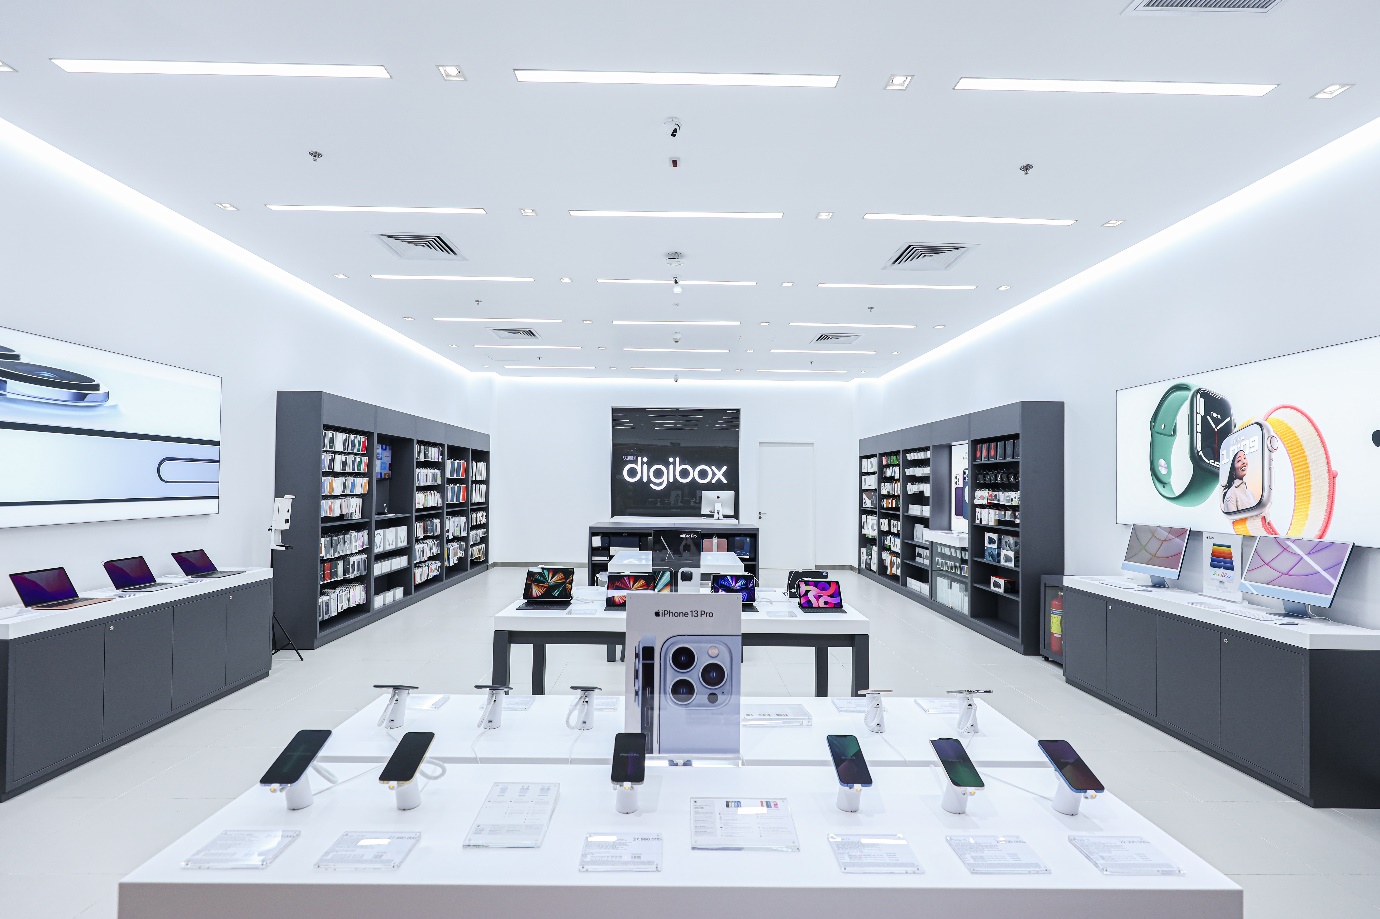 Digibox khai trương cửa hàng Uỷ quyền Apple cùng nhiều ưu đãi - Ảnh 1.